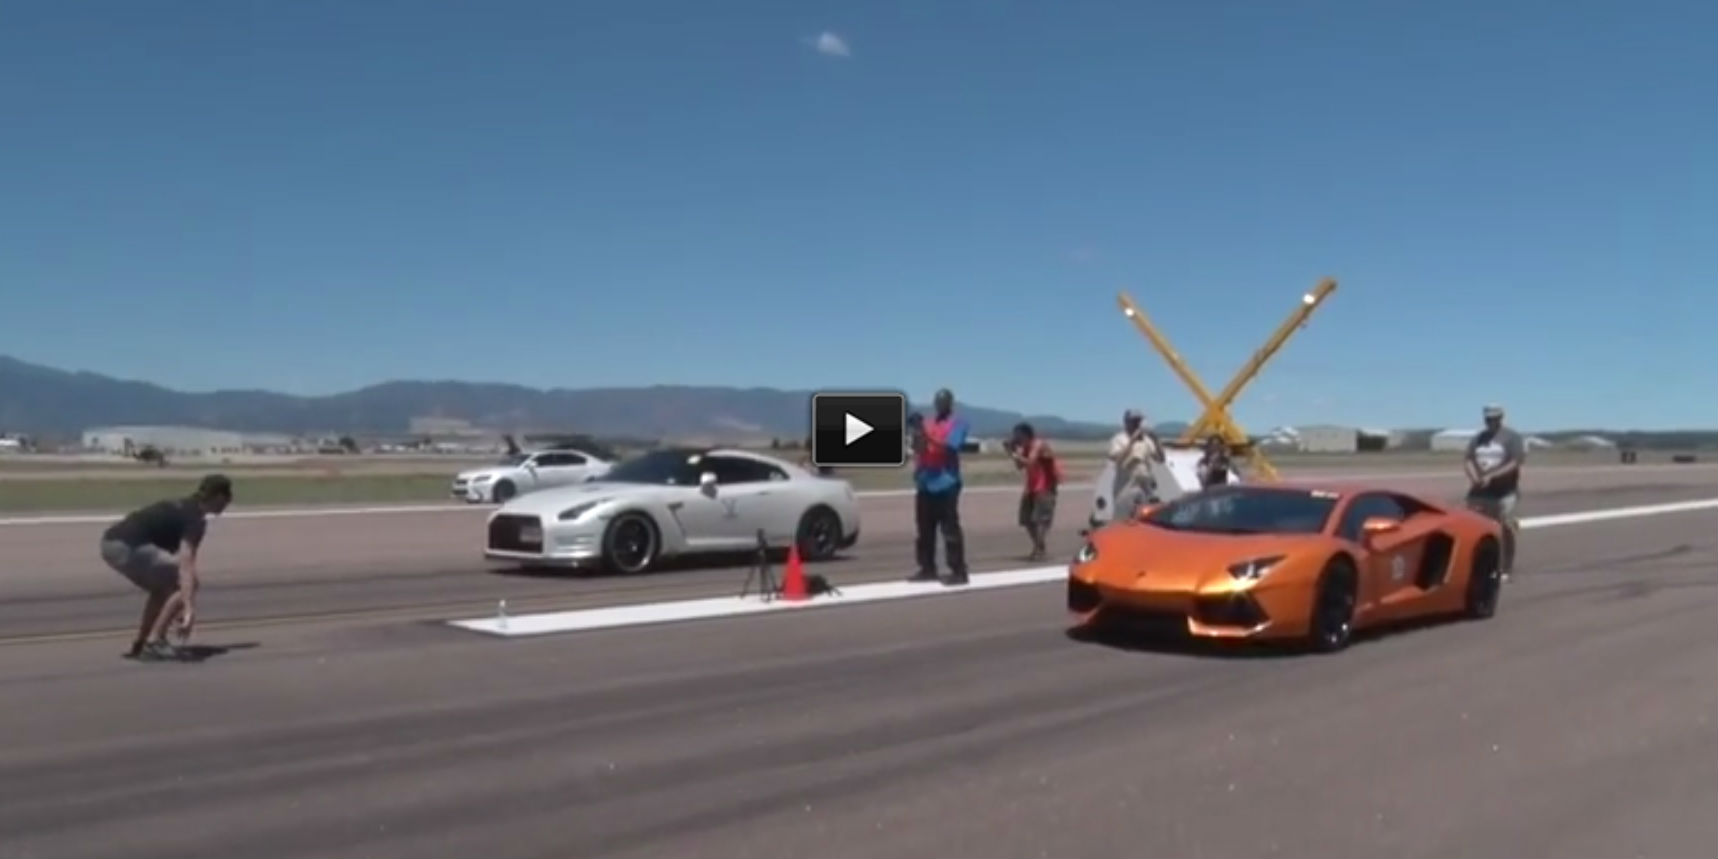 drag racing video Lambo Aventador vs Nissan GTR vs Audi R8 vs Chevy Corvette